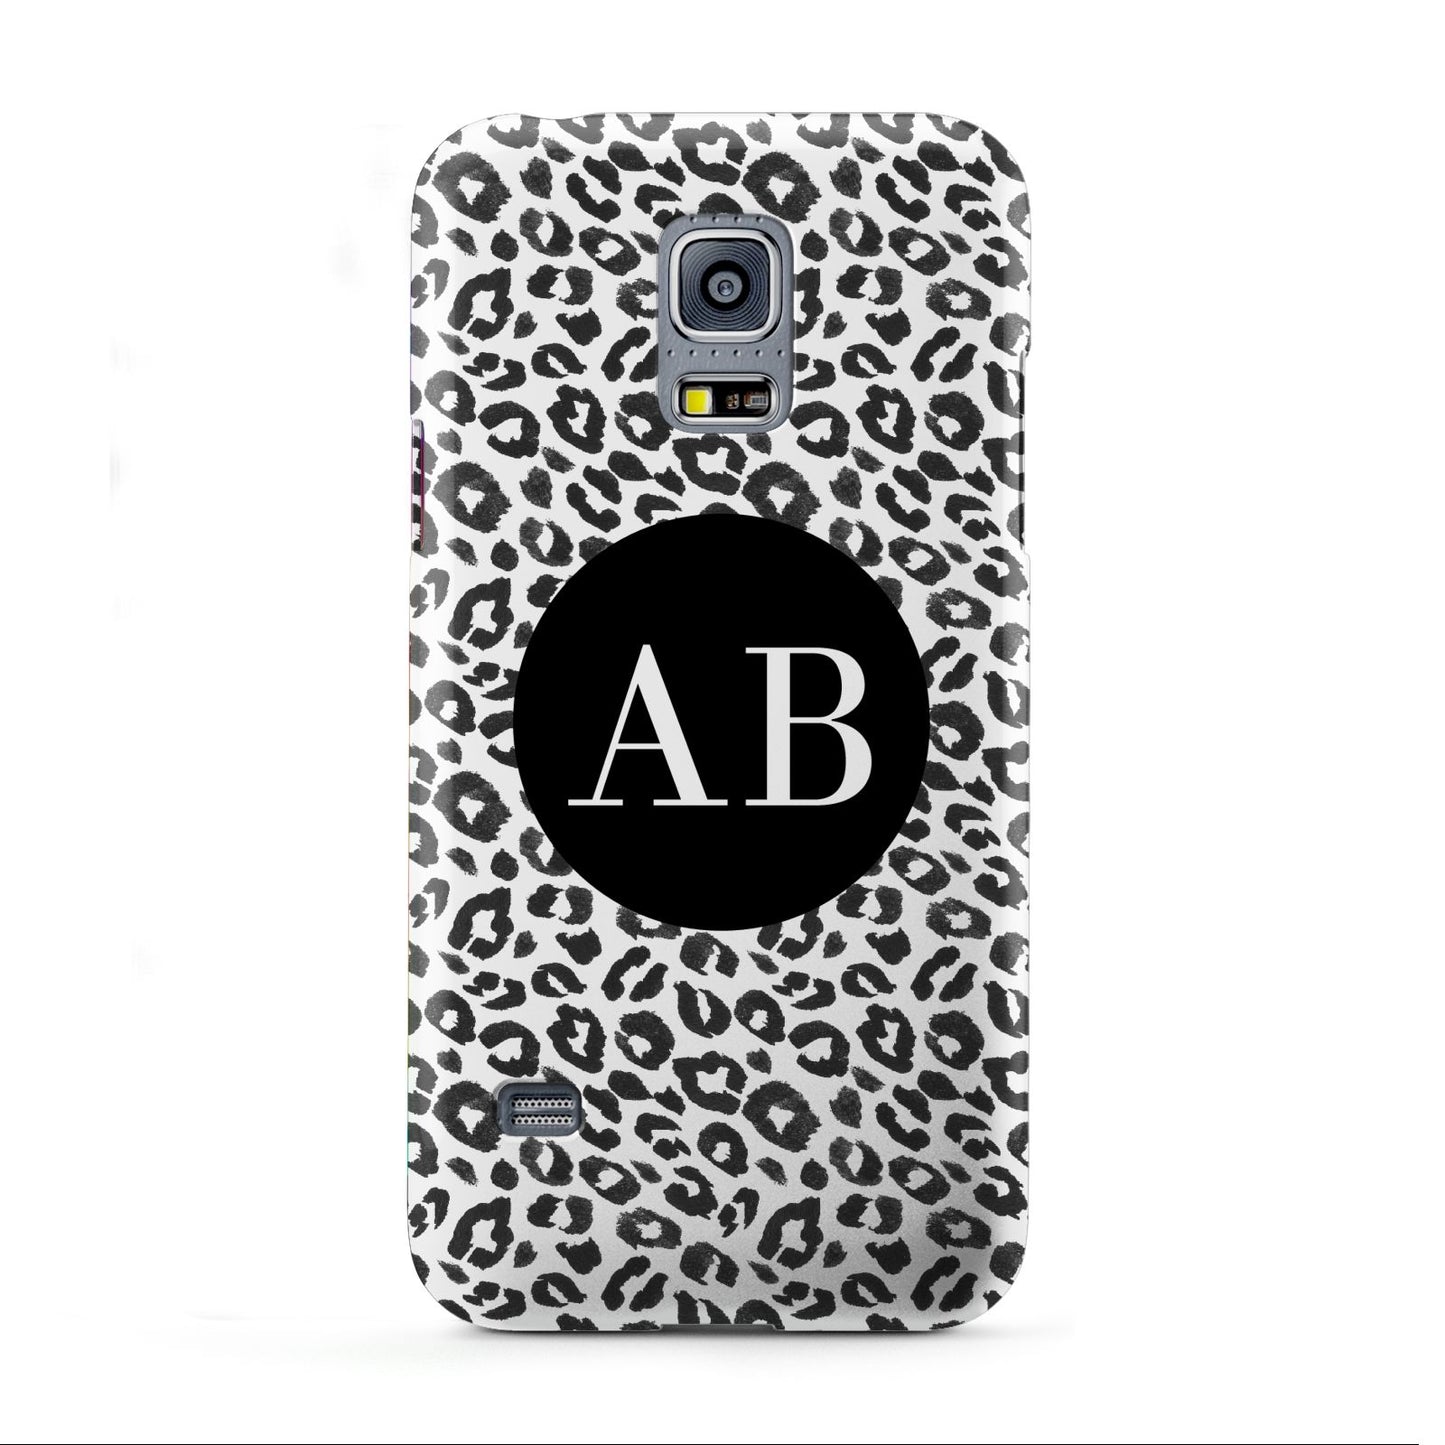 Leopard Print Black and White Samsung Galaxy S5 Mini Case